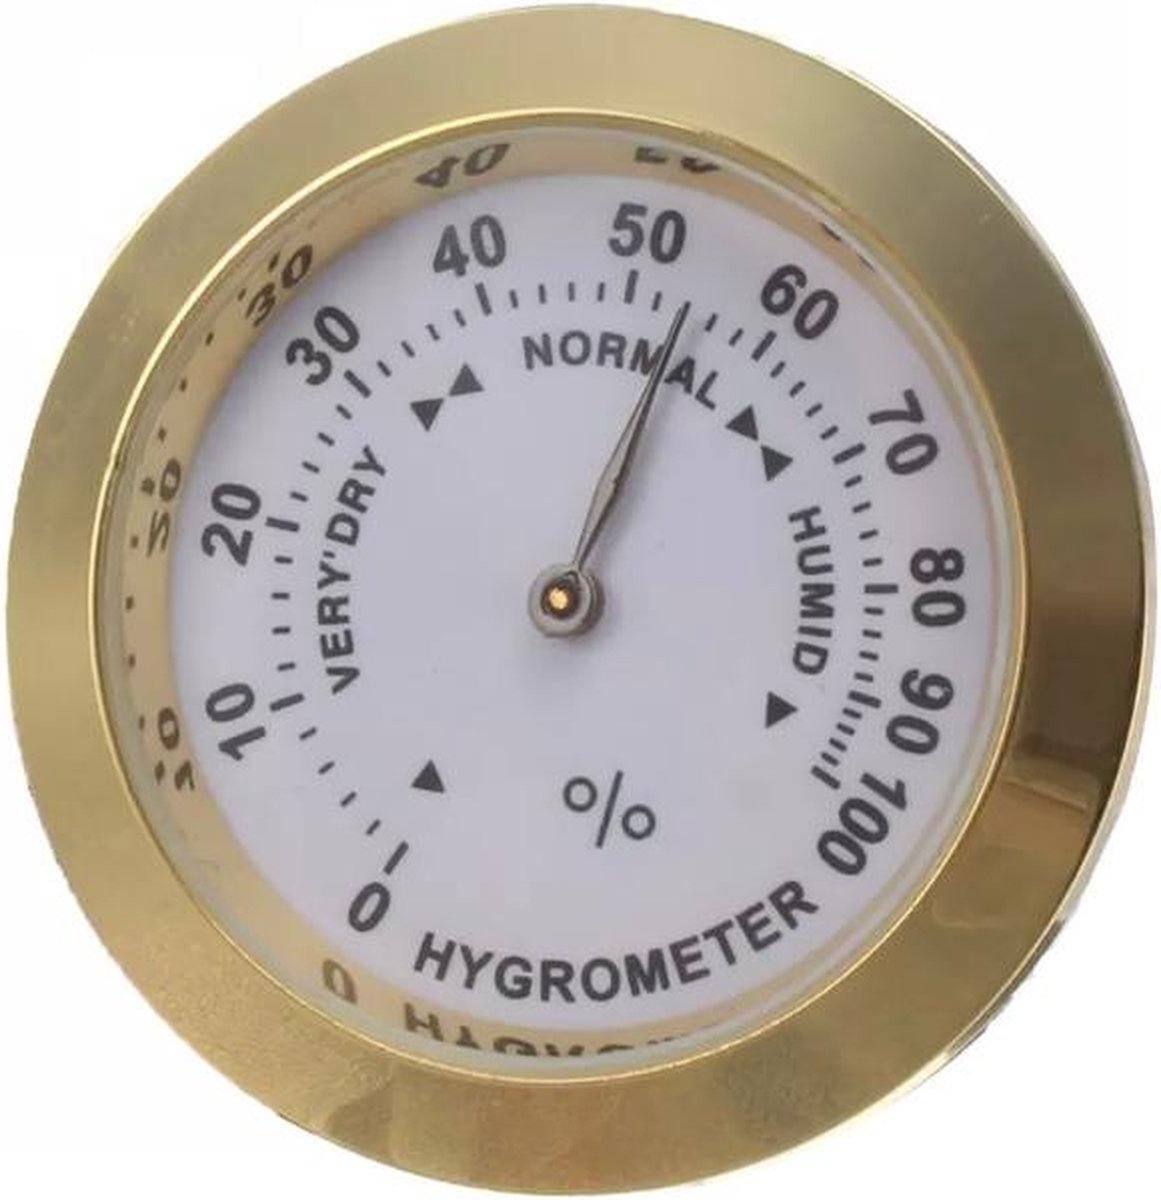 Hygrometer - analoog - goudkleurig - 37 mm groot - 9 mm dik - kleine hygrometer - vochtmeter - Merkloos